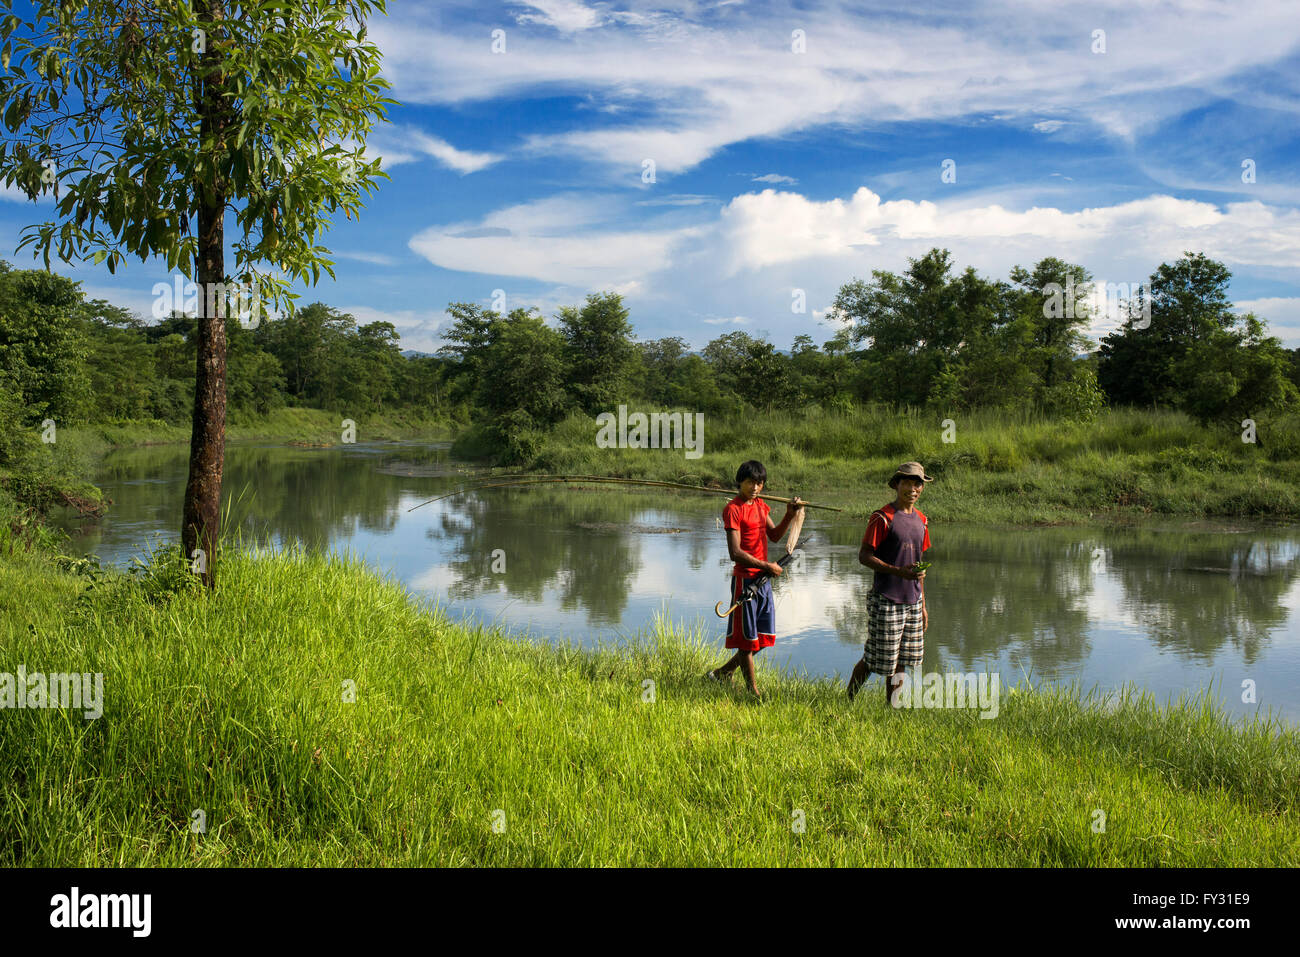 Amico ragazzi nel fiume Rapti, Chitwan il parco nazionale, Nepal, Asia Foto Stock